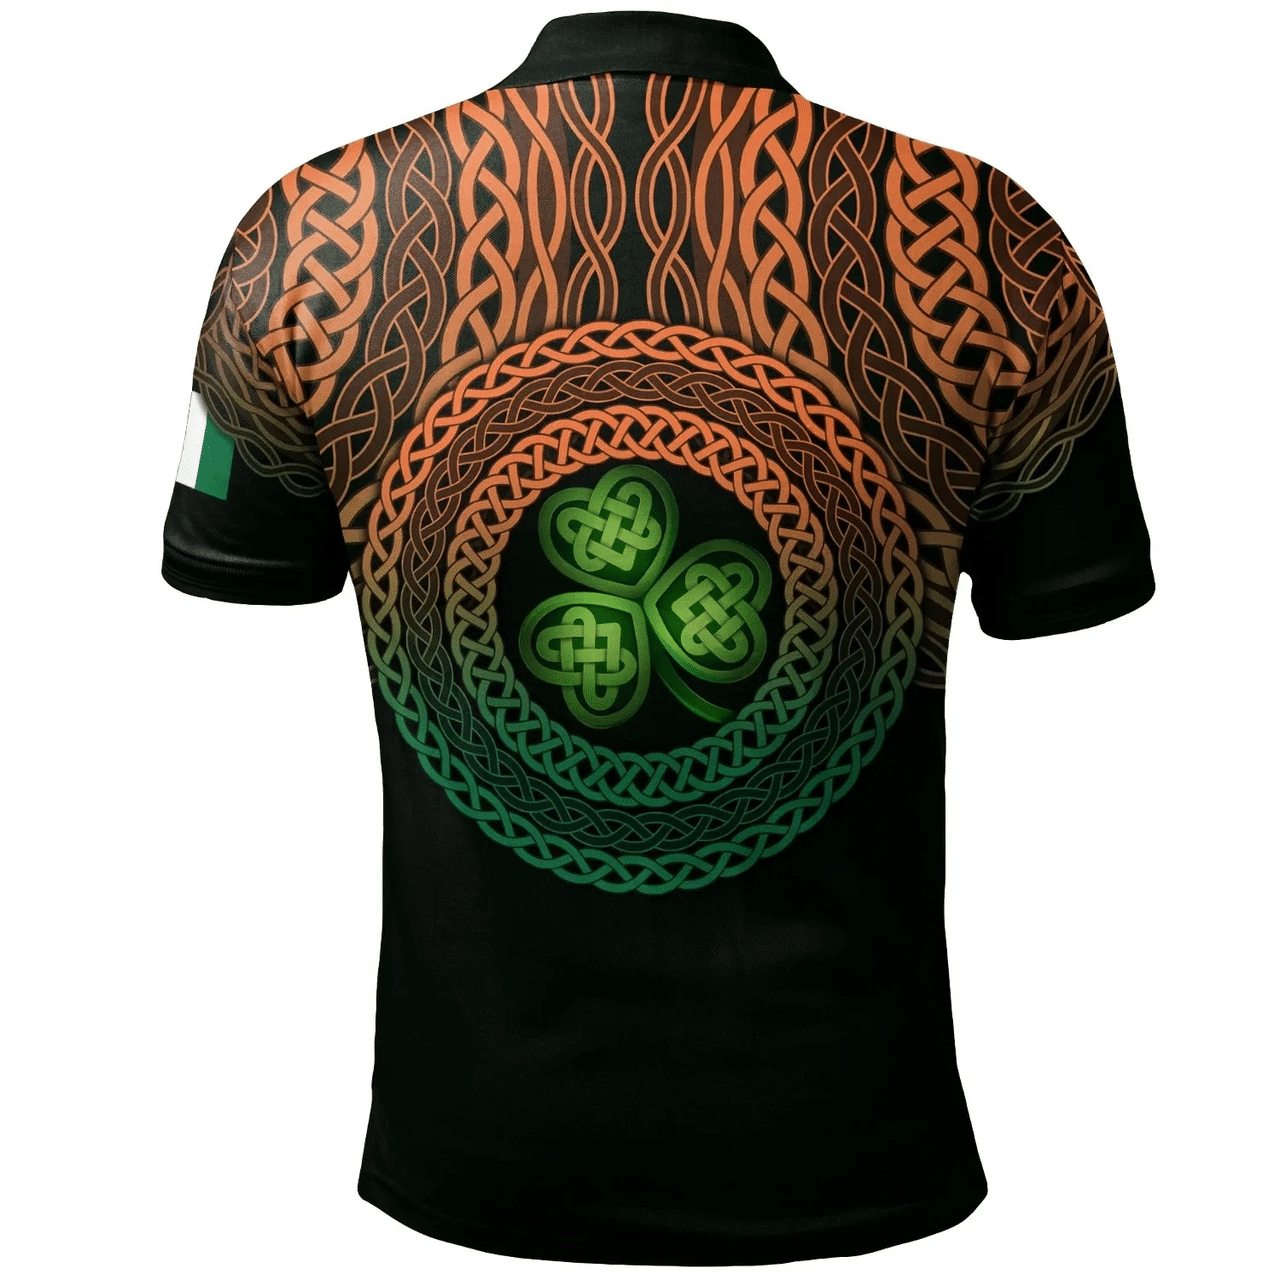 1stIreland Ireland Polo Shirt - Meacham Irish Family Crest Polo Shirt - Celtic Pride A7 | 1stIreland.com